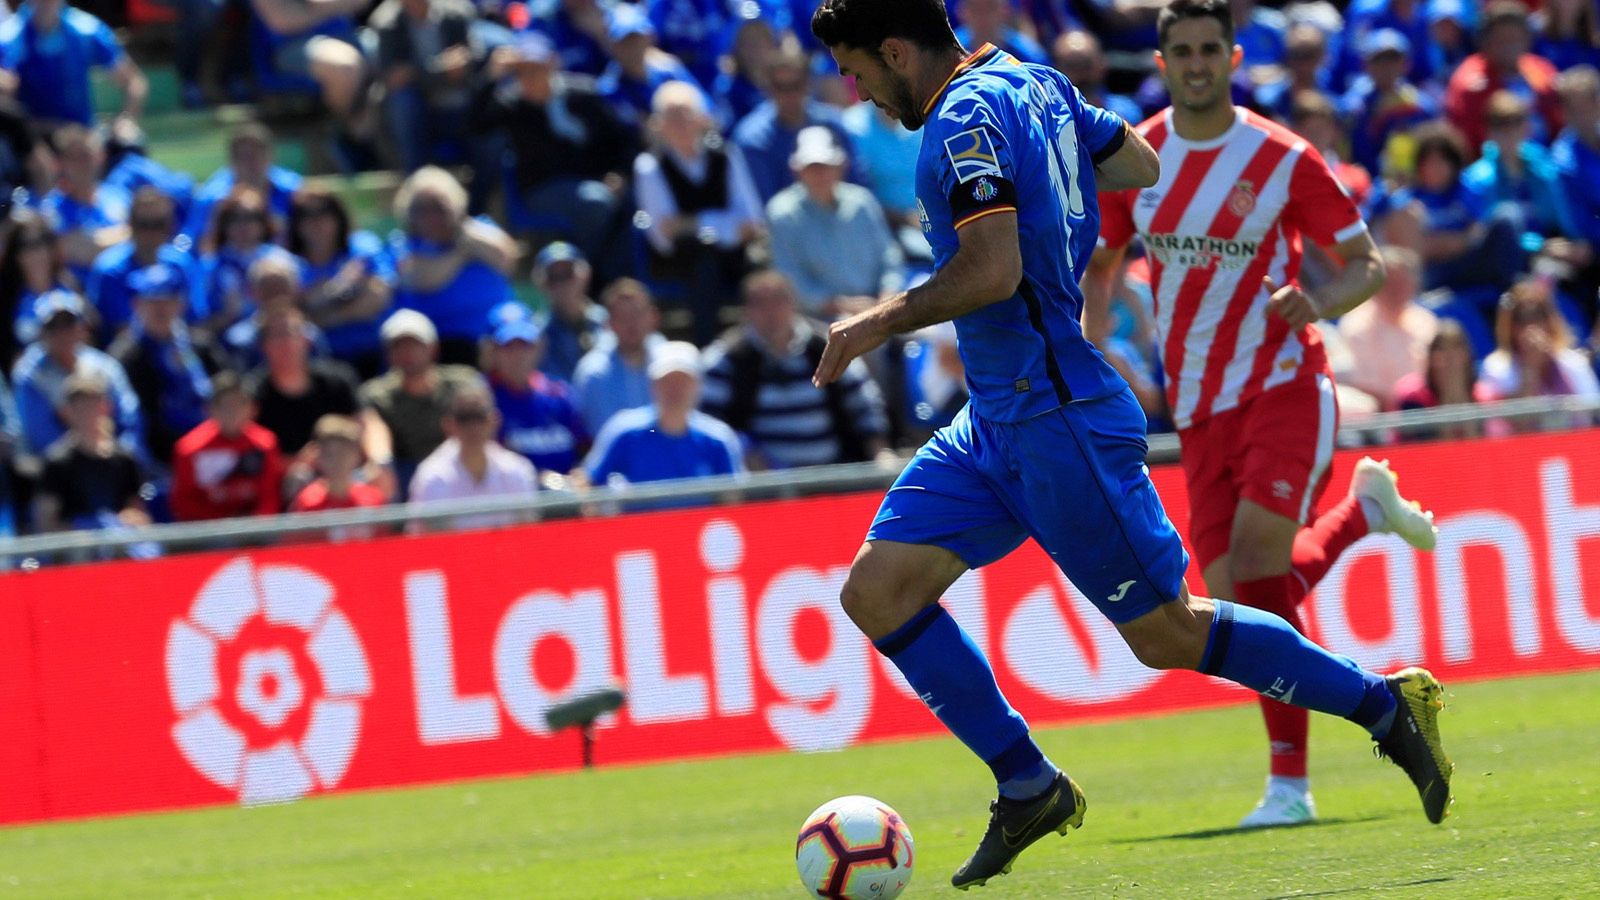 El delantero del Getafe Jorge Molina (i) controla el balón ante un defensor del Girona